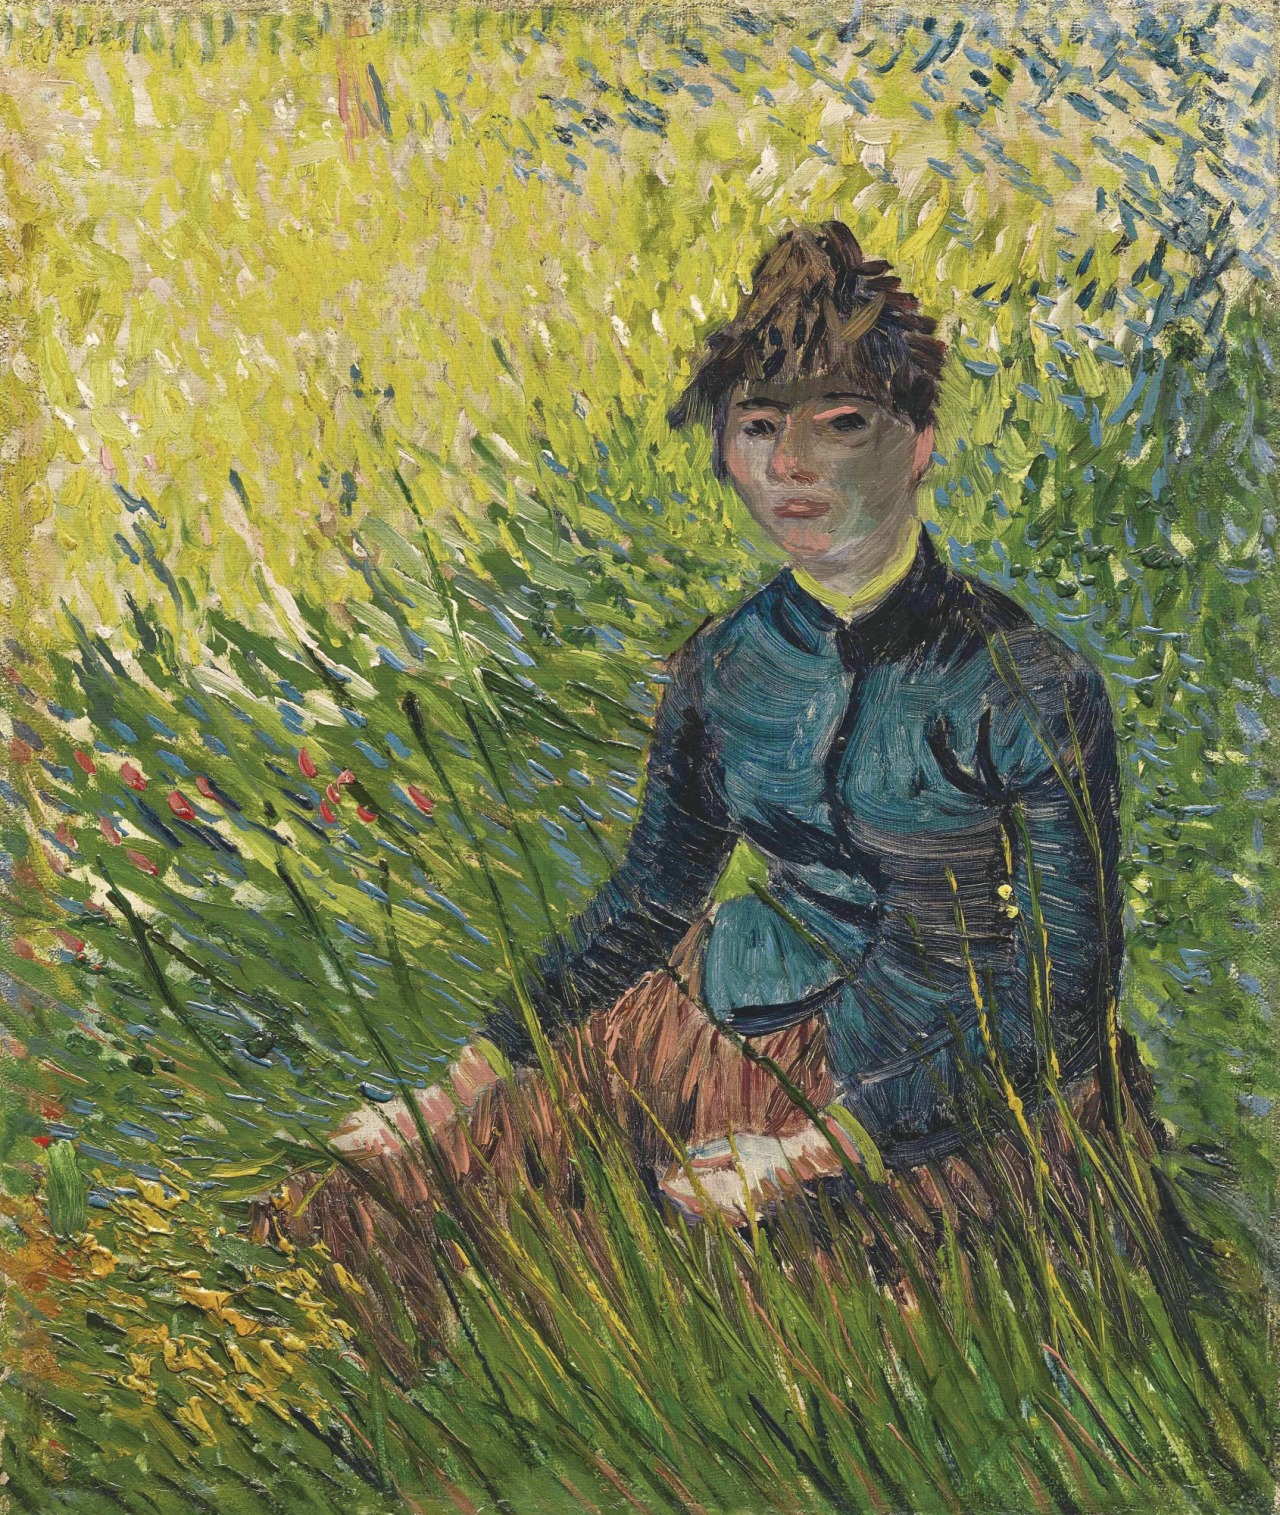 peira:
“Vincent van Gogh: Femme dans un champ de blé (1887)
”